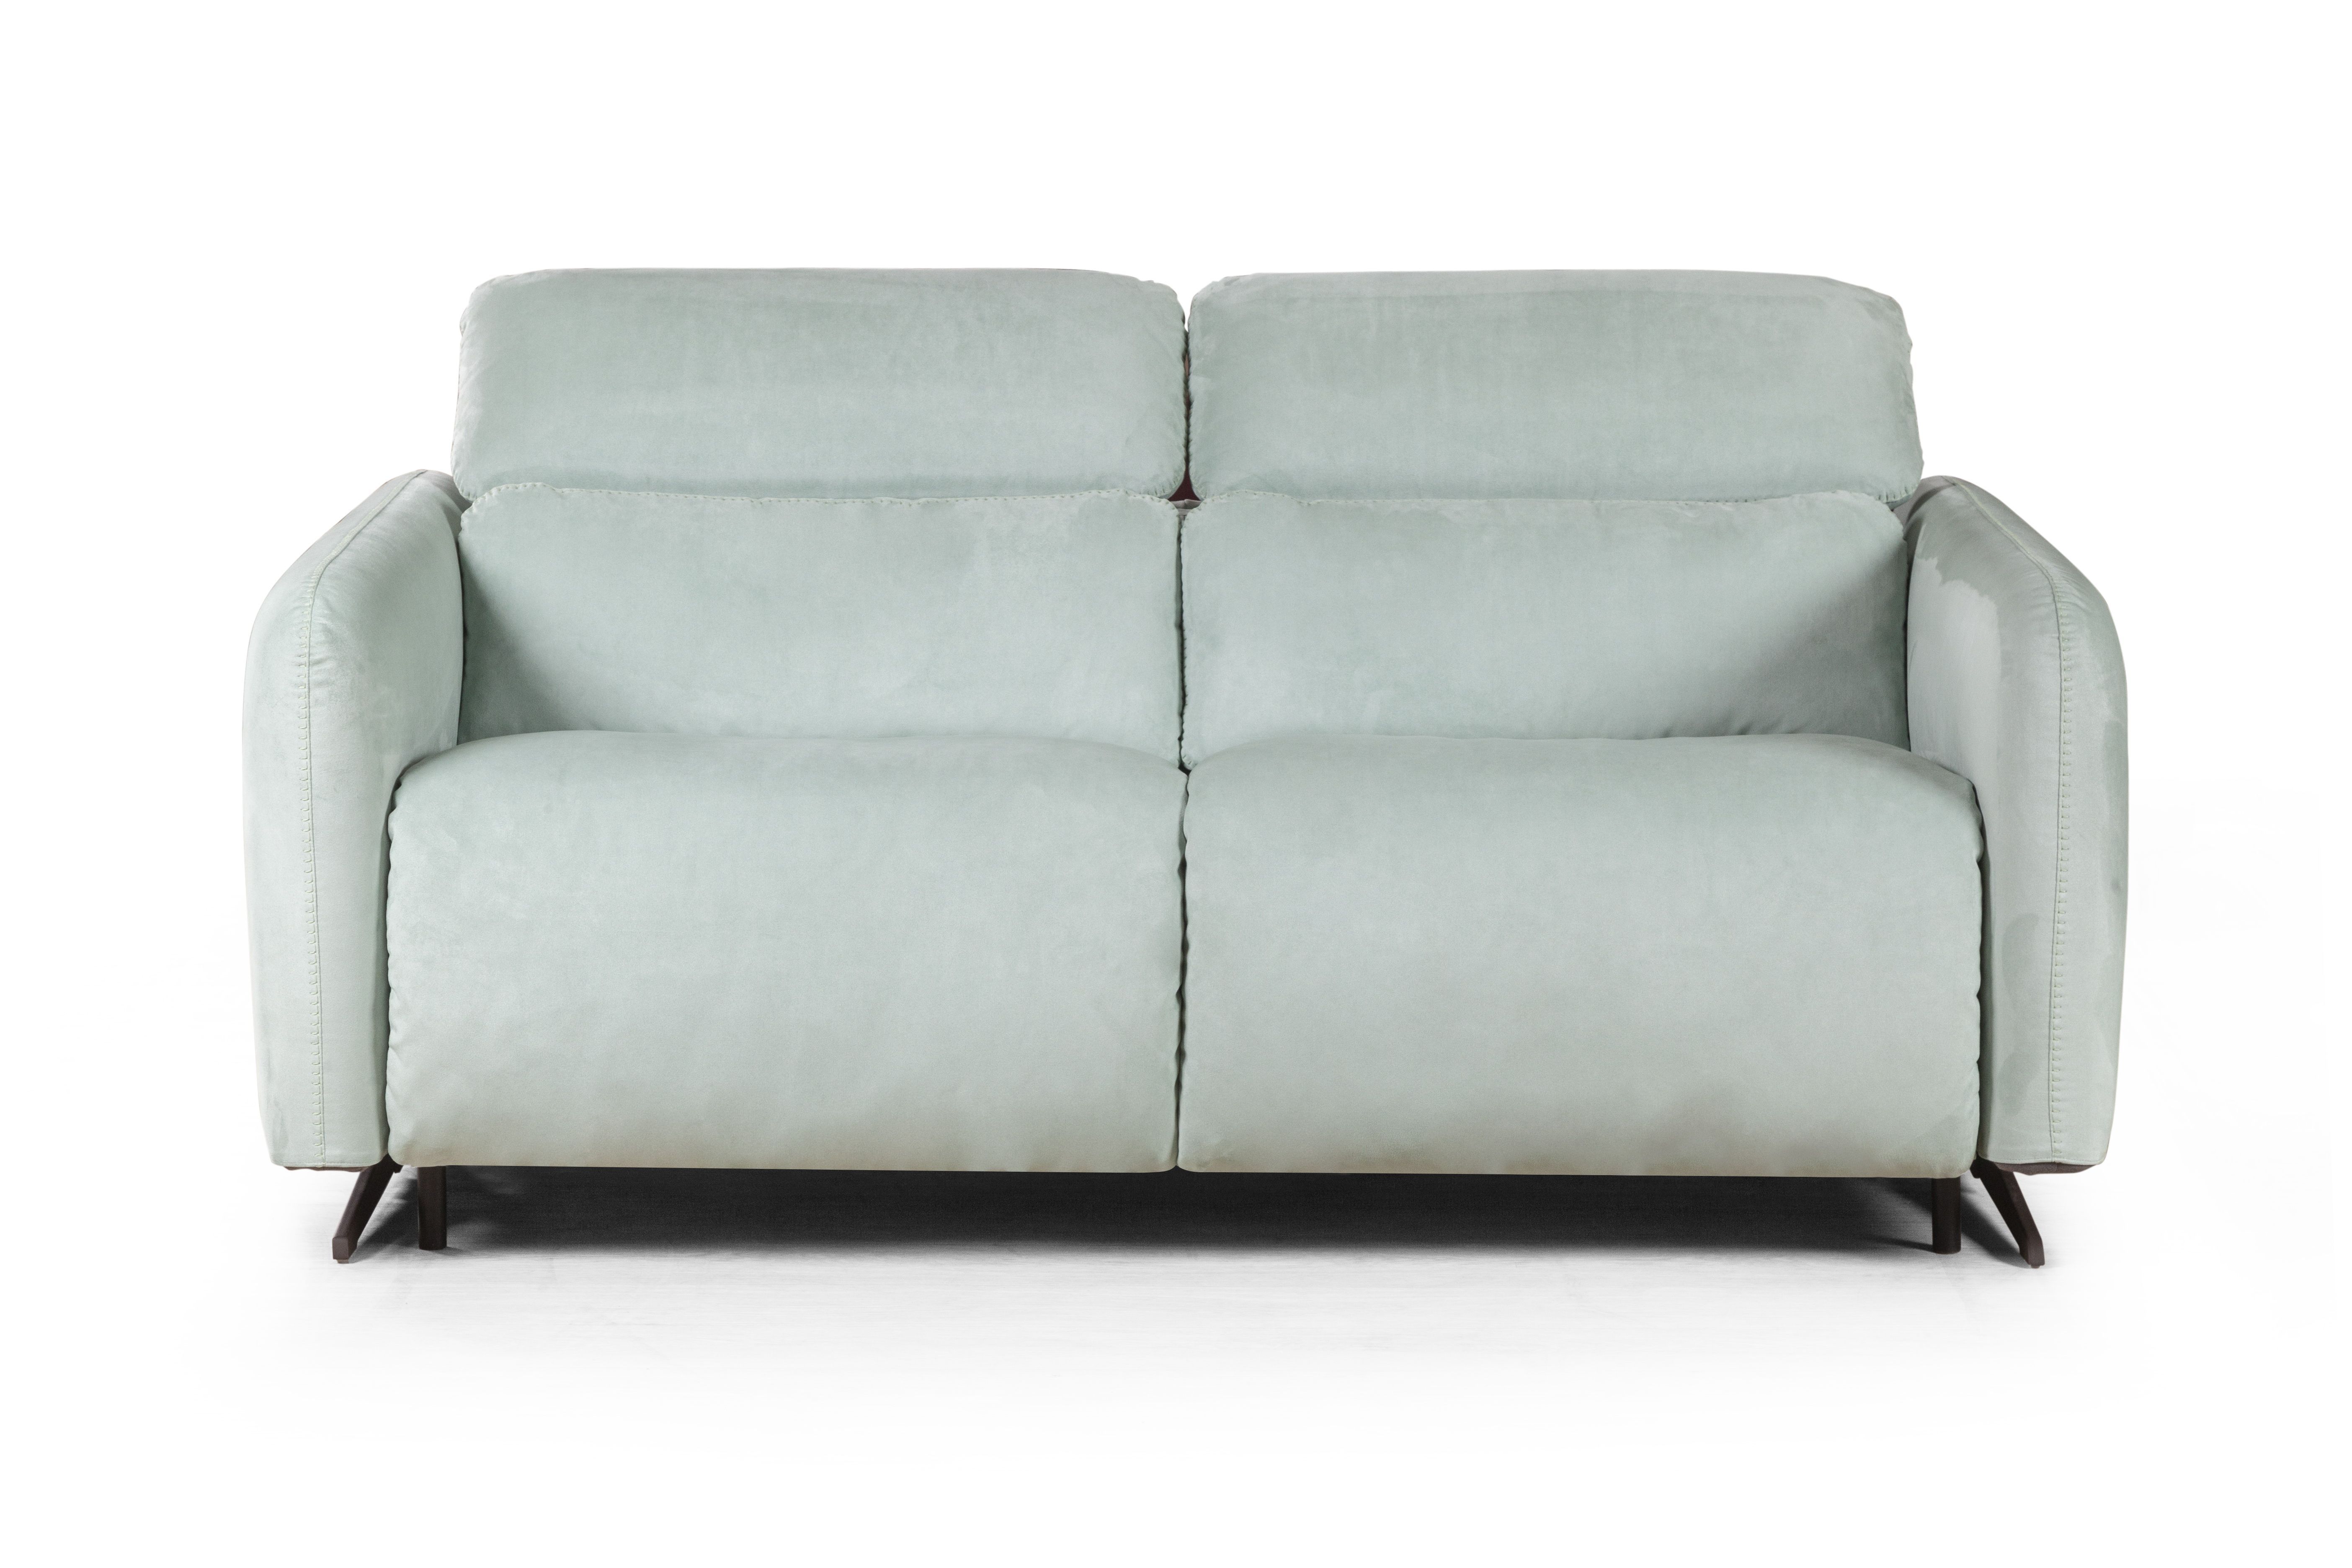 Купить Rimini диван-кровать прямой замша мятный 7793 (Россия, Top concept)за 375 500 рублей